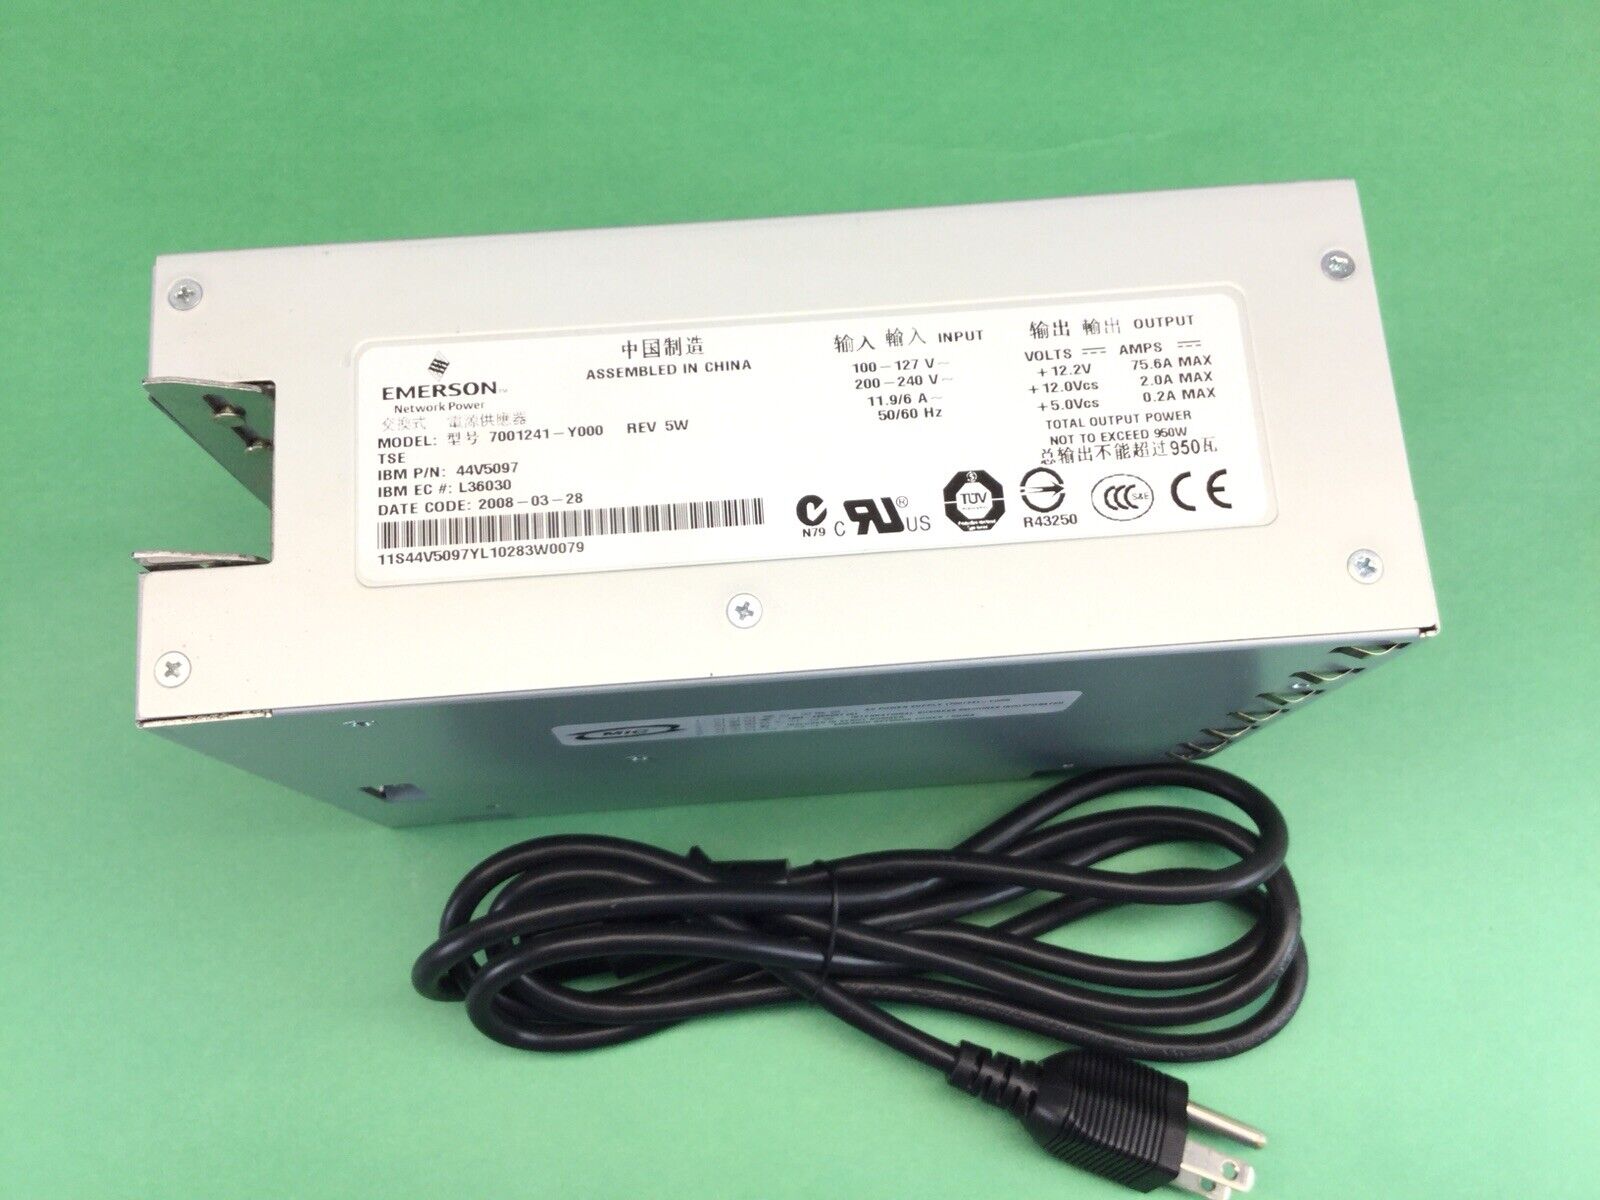 Emerson 950w power supply 7001241-y000